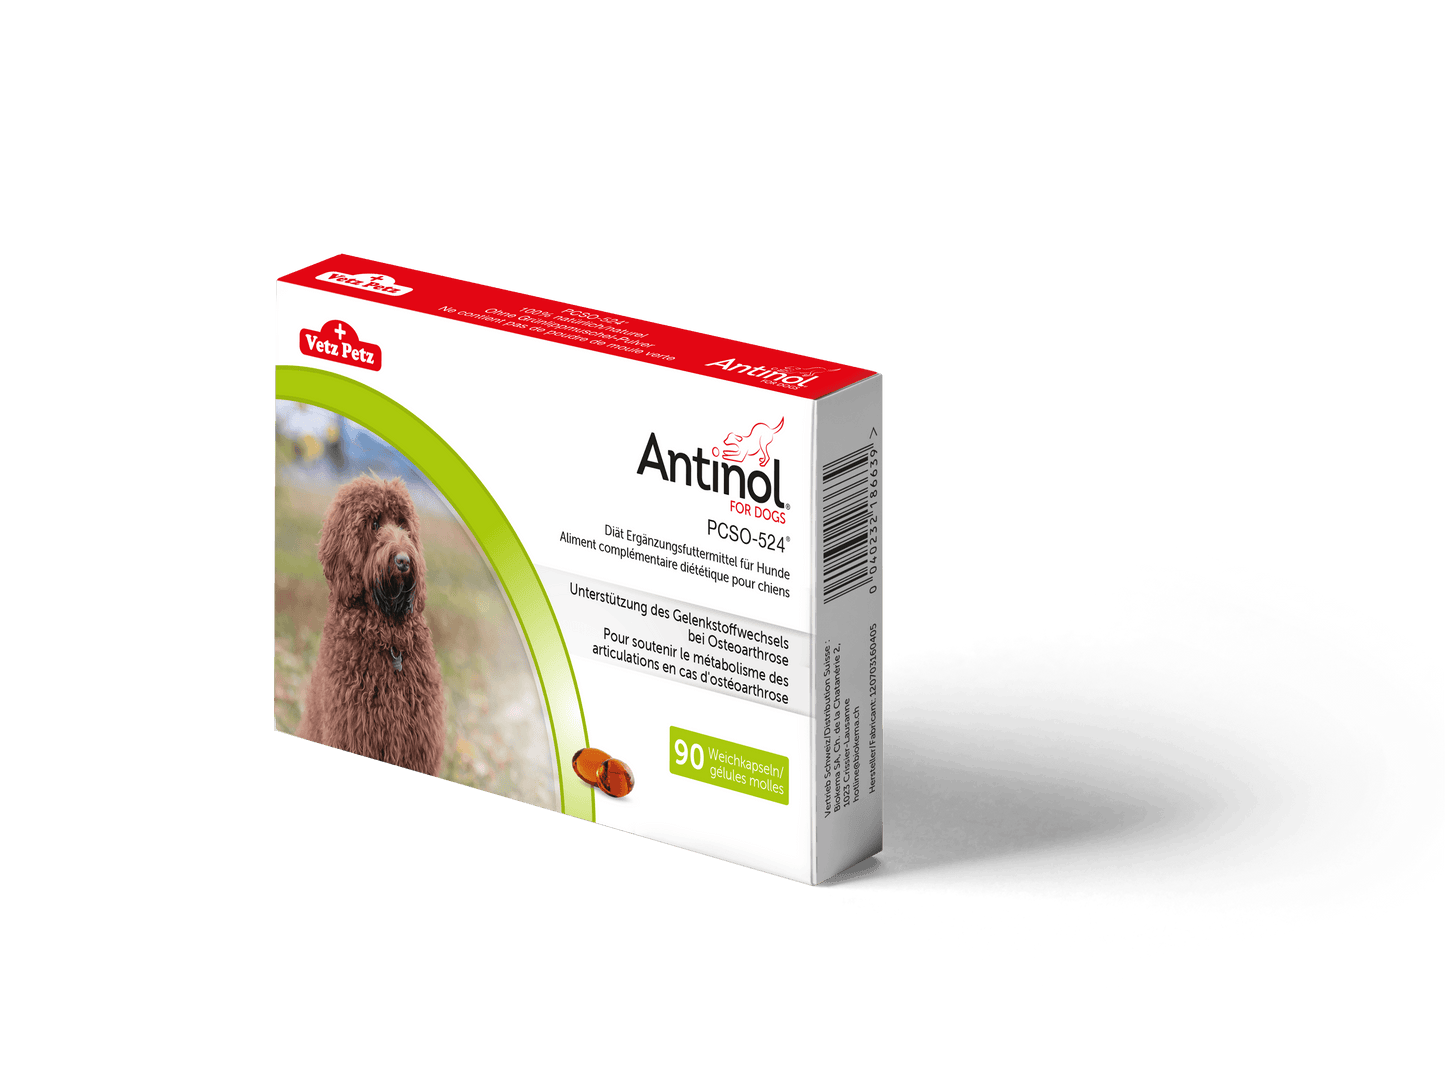 Antinol - VetzPetz - Alter:Adult, Alter:Senior, Darreichungsform:Gelkapseln, Ergänzungsfuttermittel:Gelenke, Tierart:Hund - Marigin AG Onlineshop für Tierbedarf